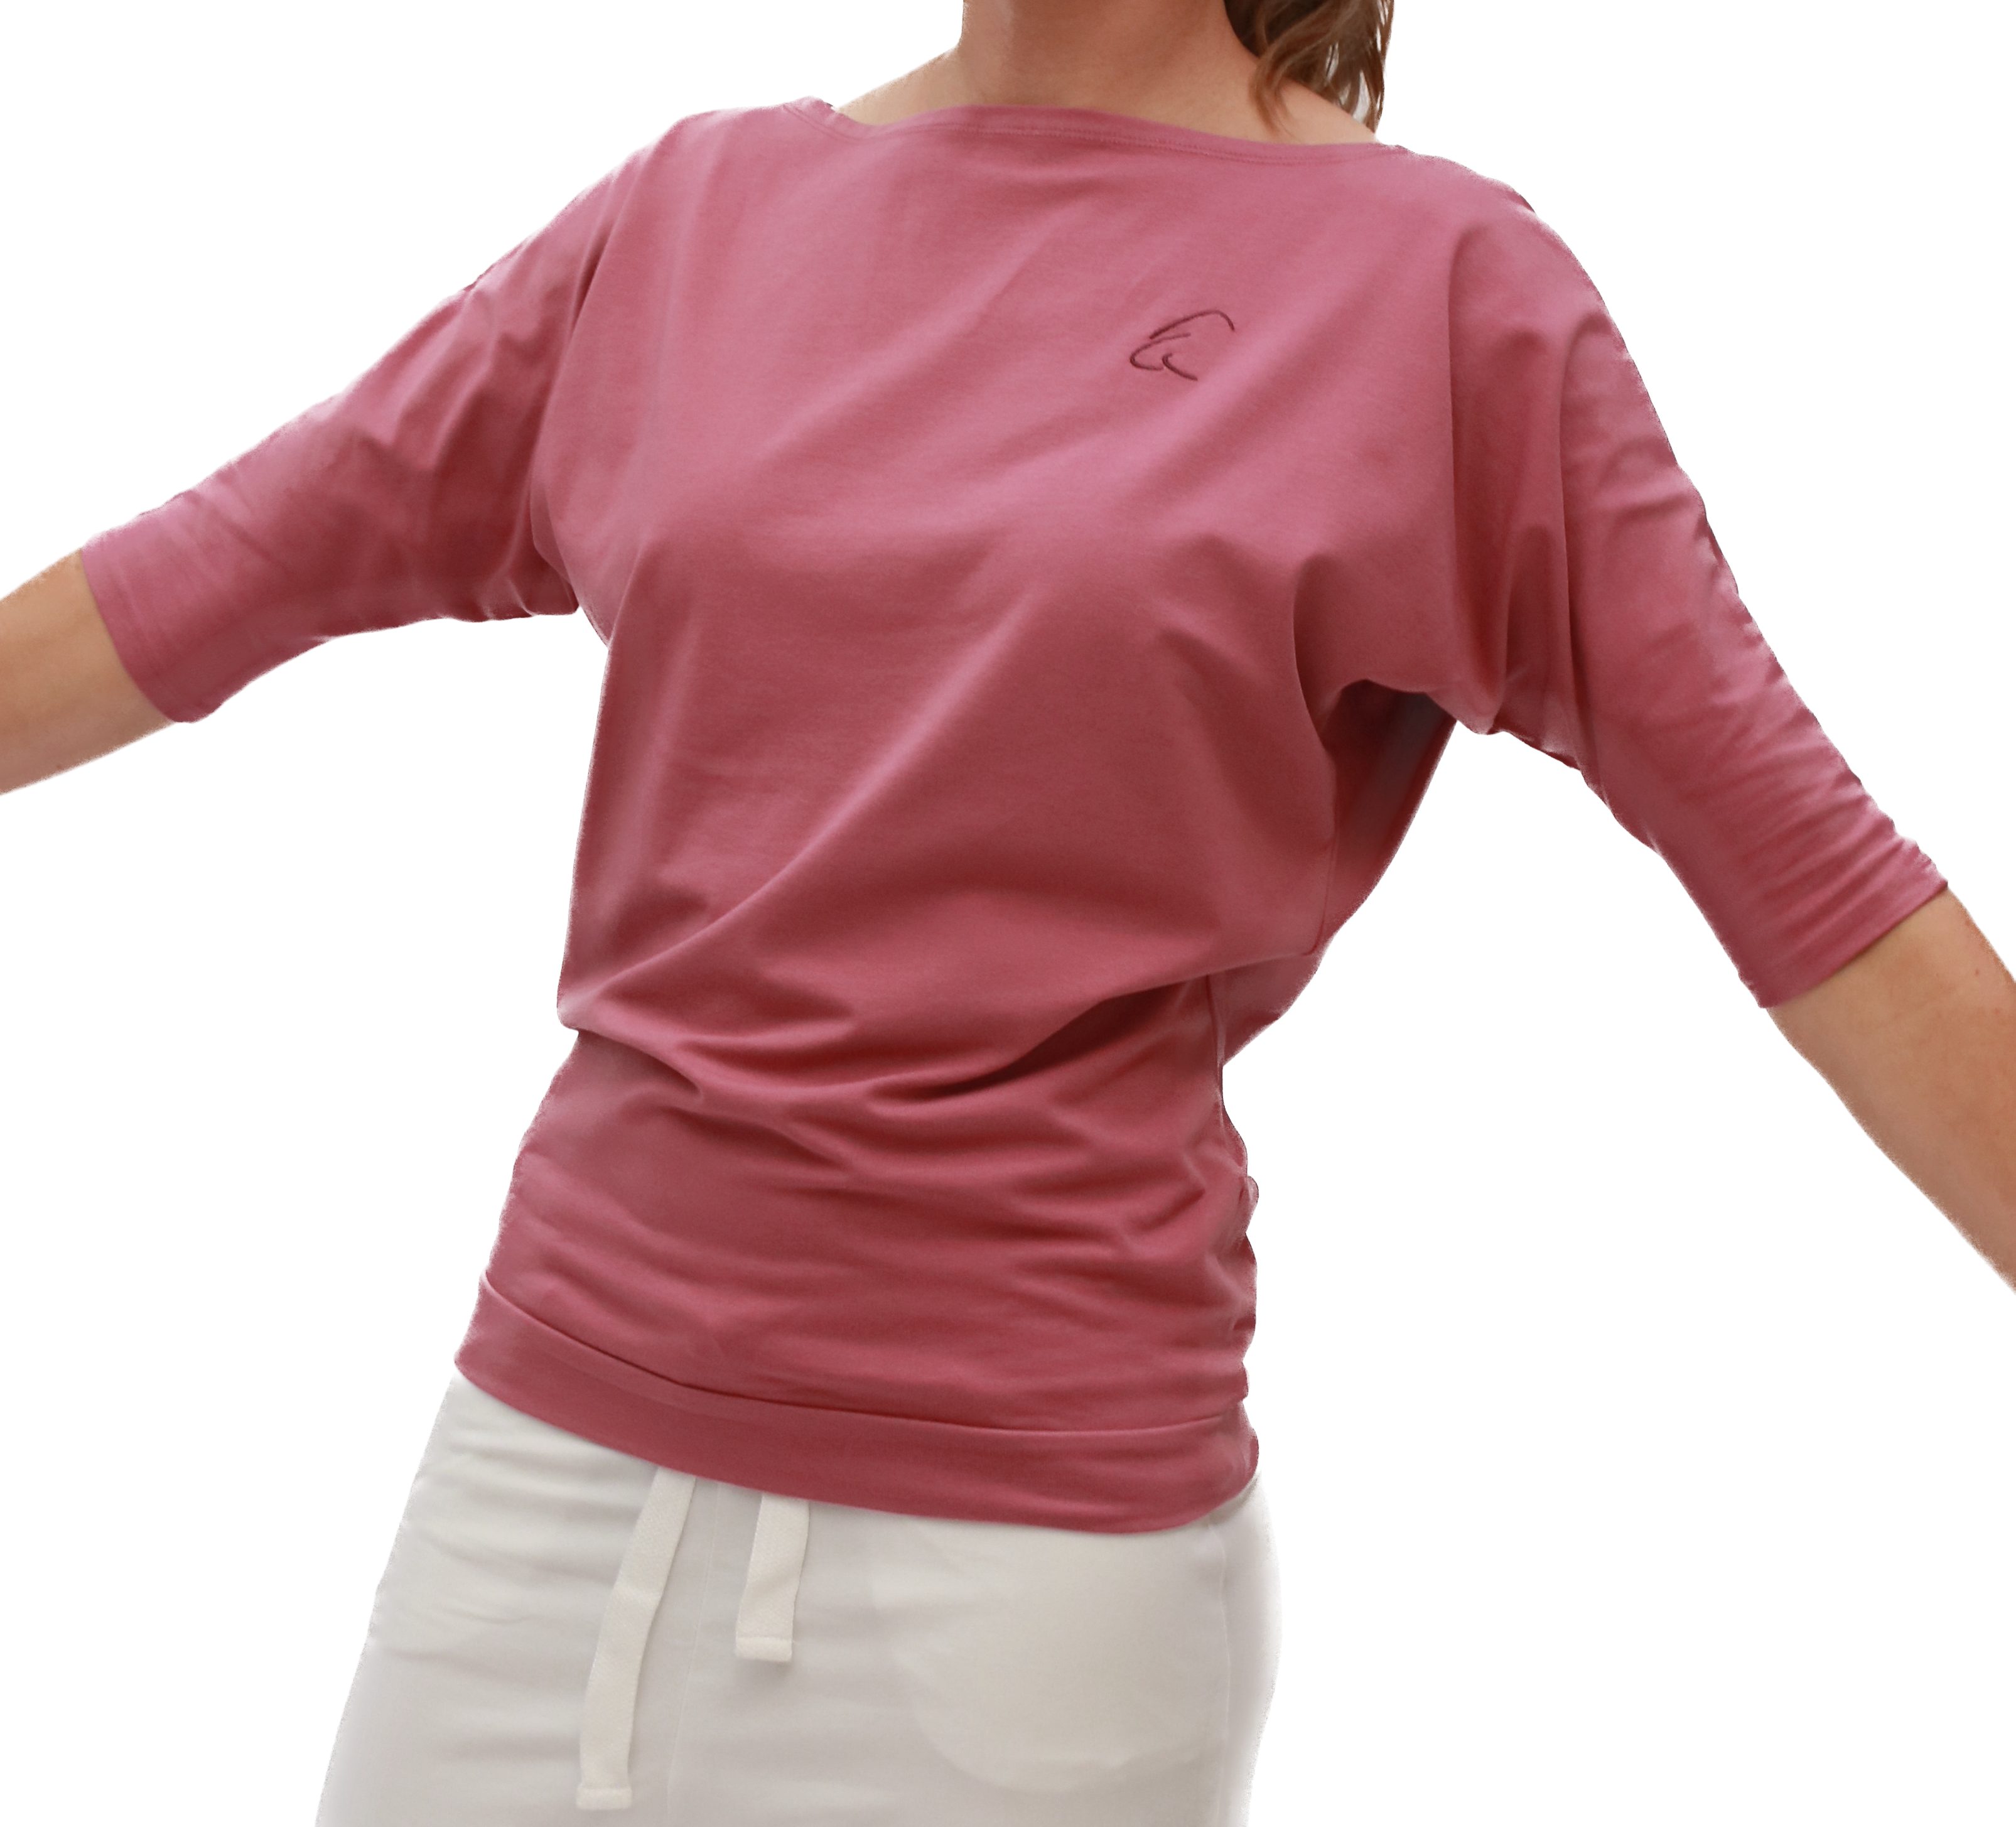 Sadaa mit Heiderose Halbarmshirt Yogashirt ESPARTO Bio-Baumwolle (U-Boot-Ausschnitt) Wohlfühlshirt in breitem Schulterausschnitt